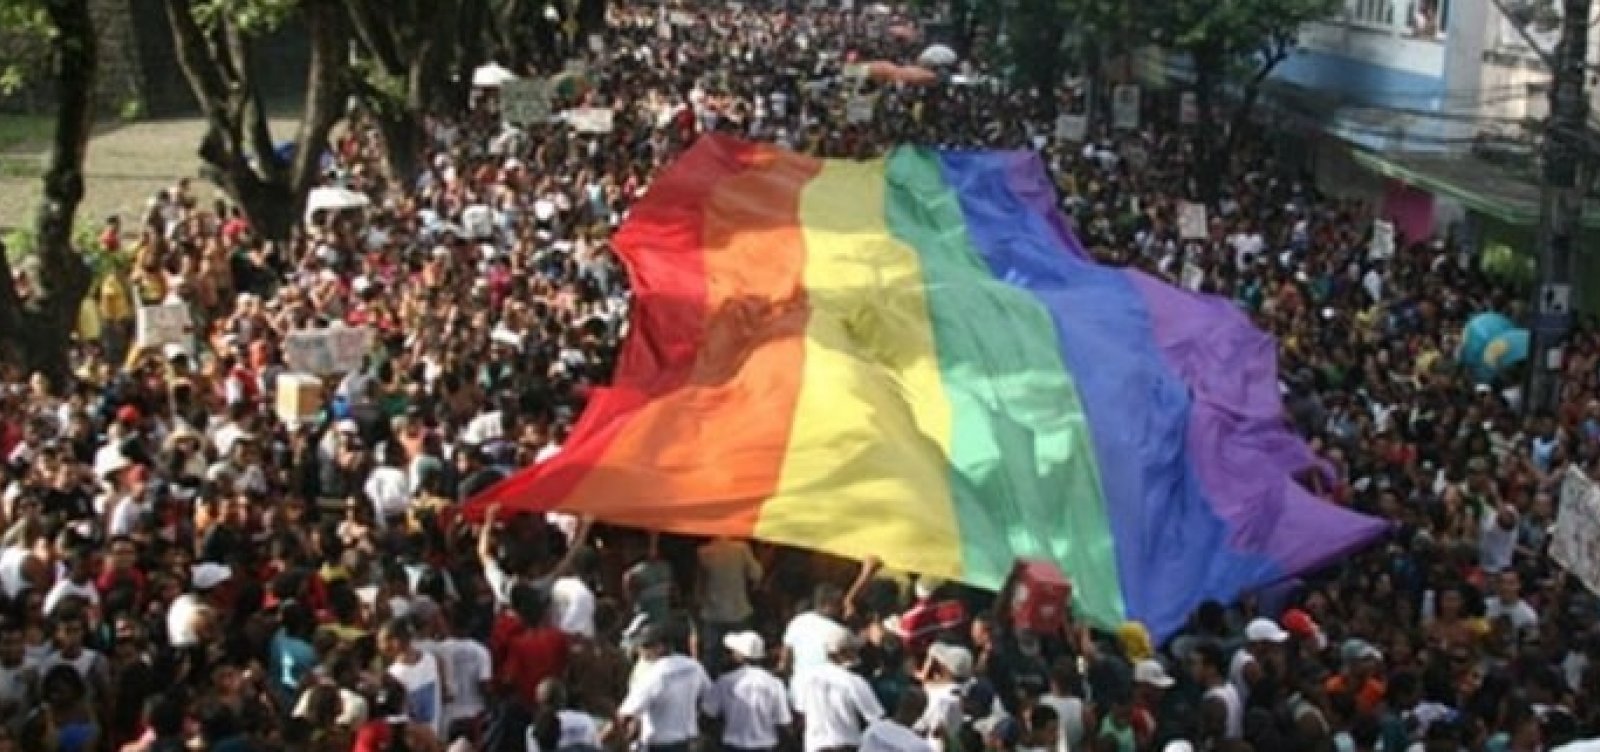 Parada LGBT altera tráfego de veículos neste domingo